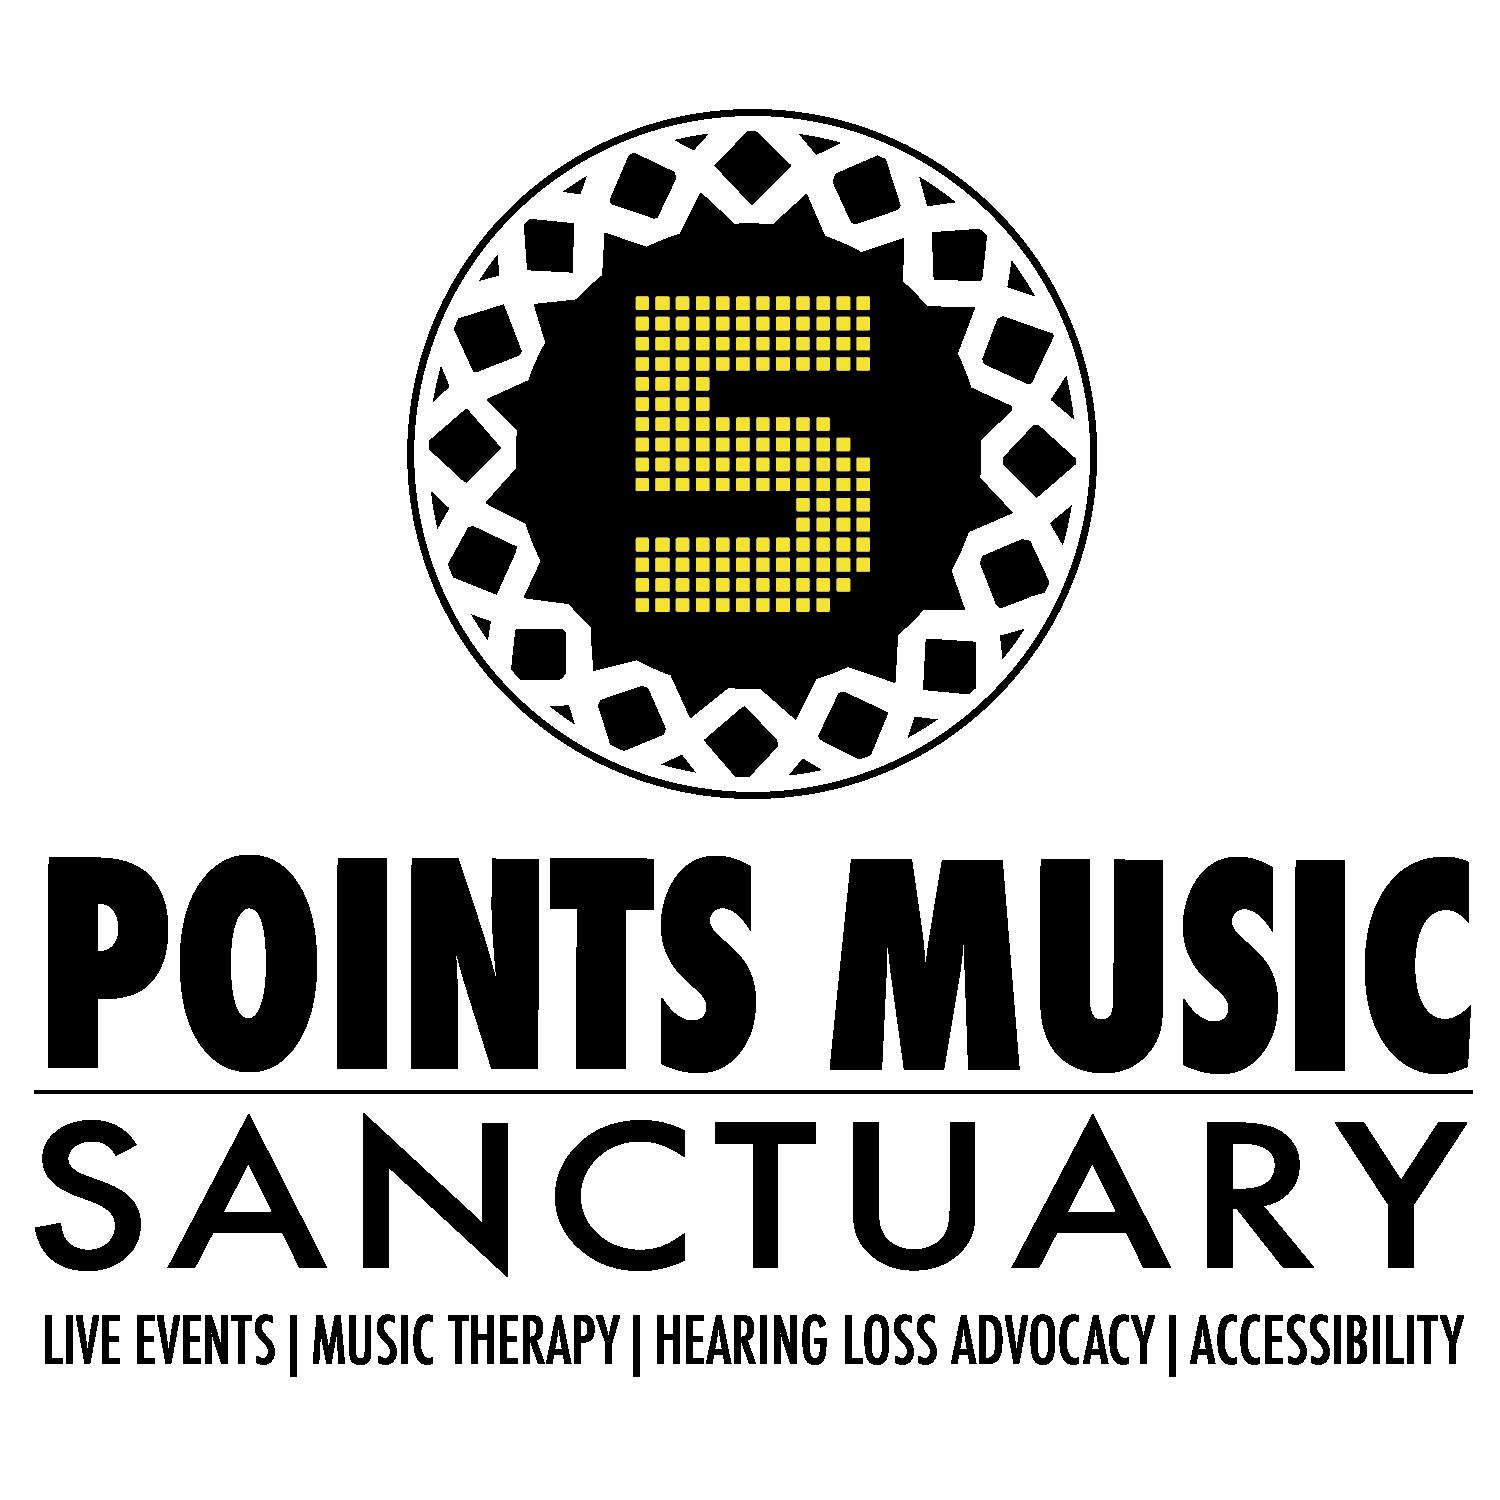 5 Points Music Sanctuary: Main Image